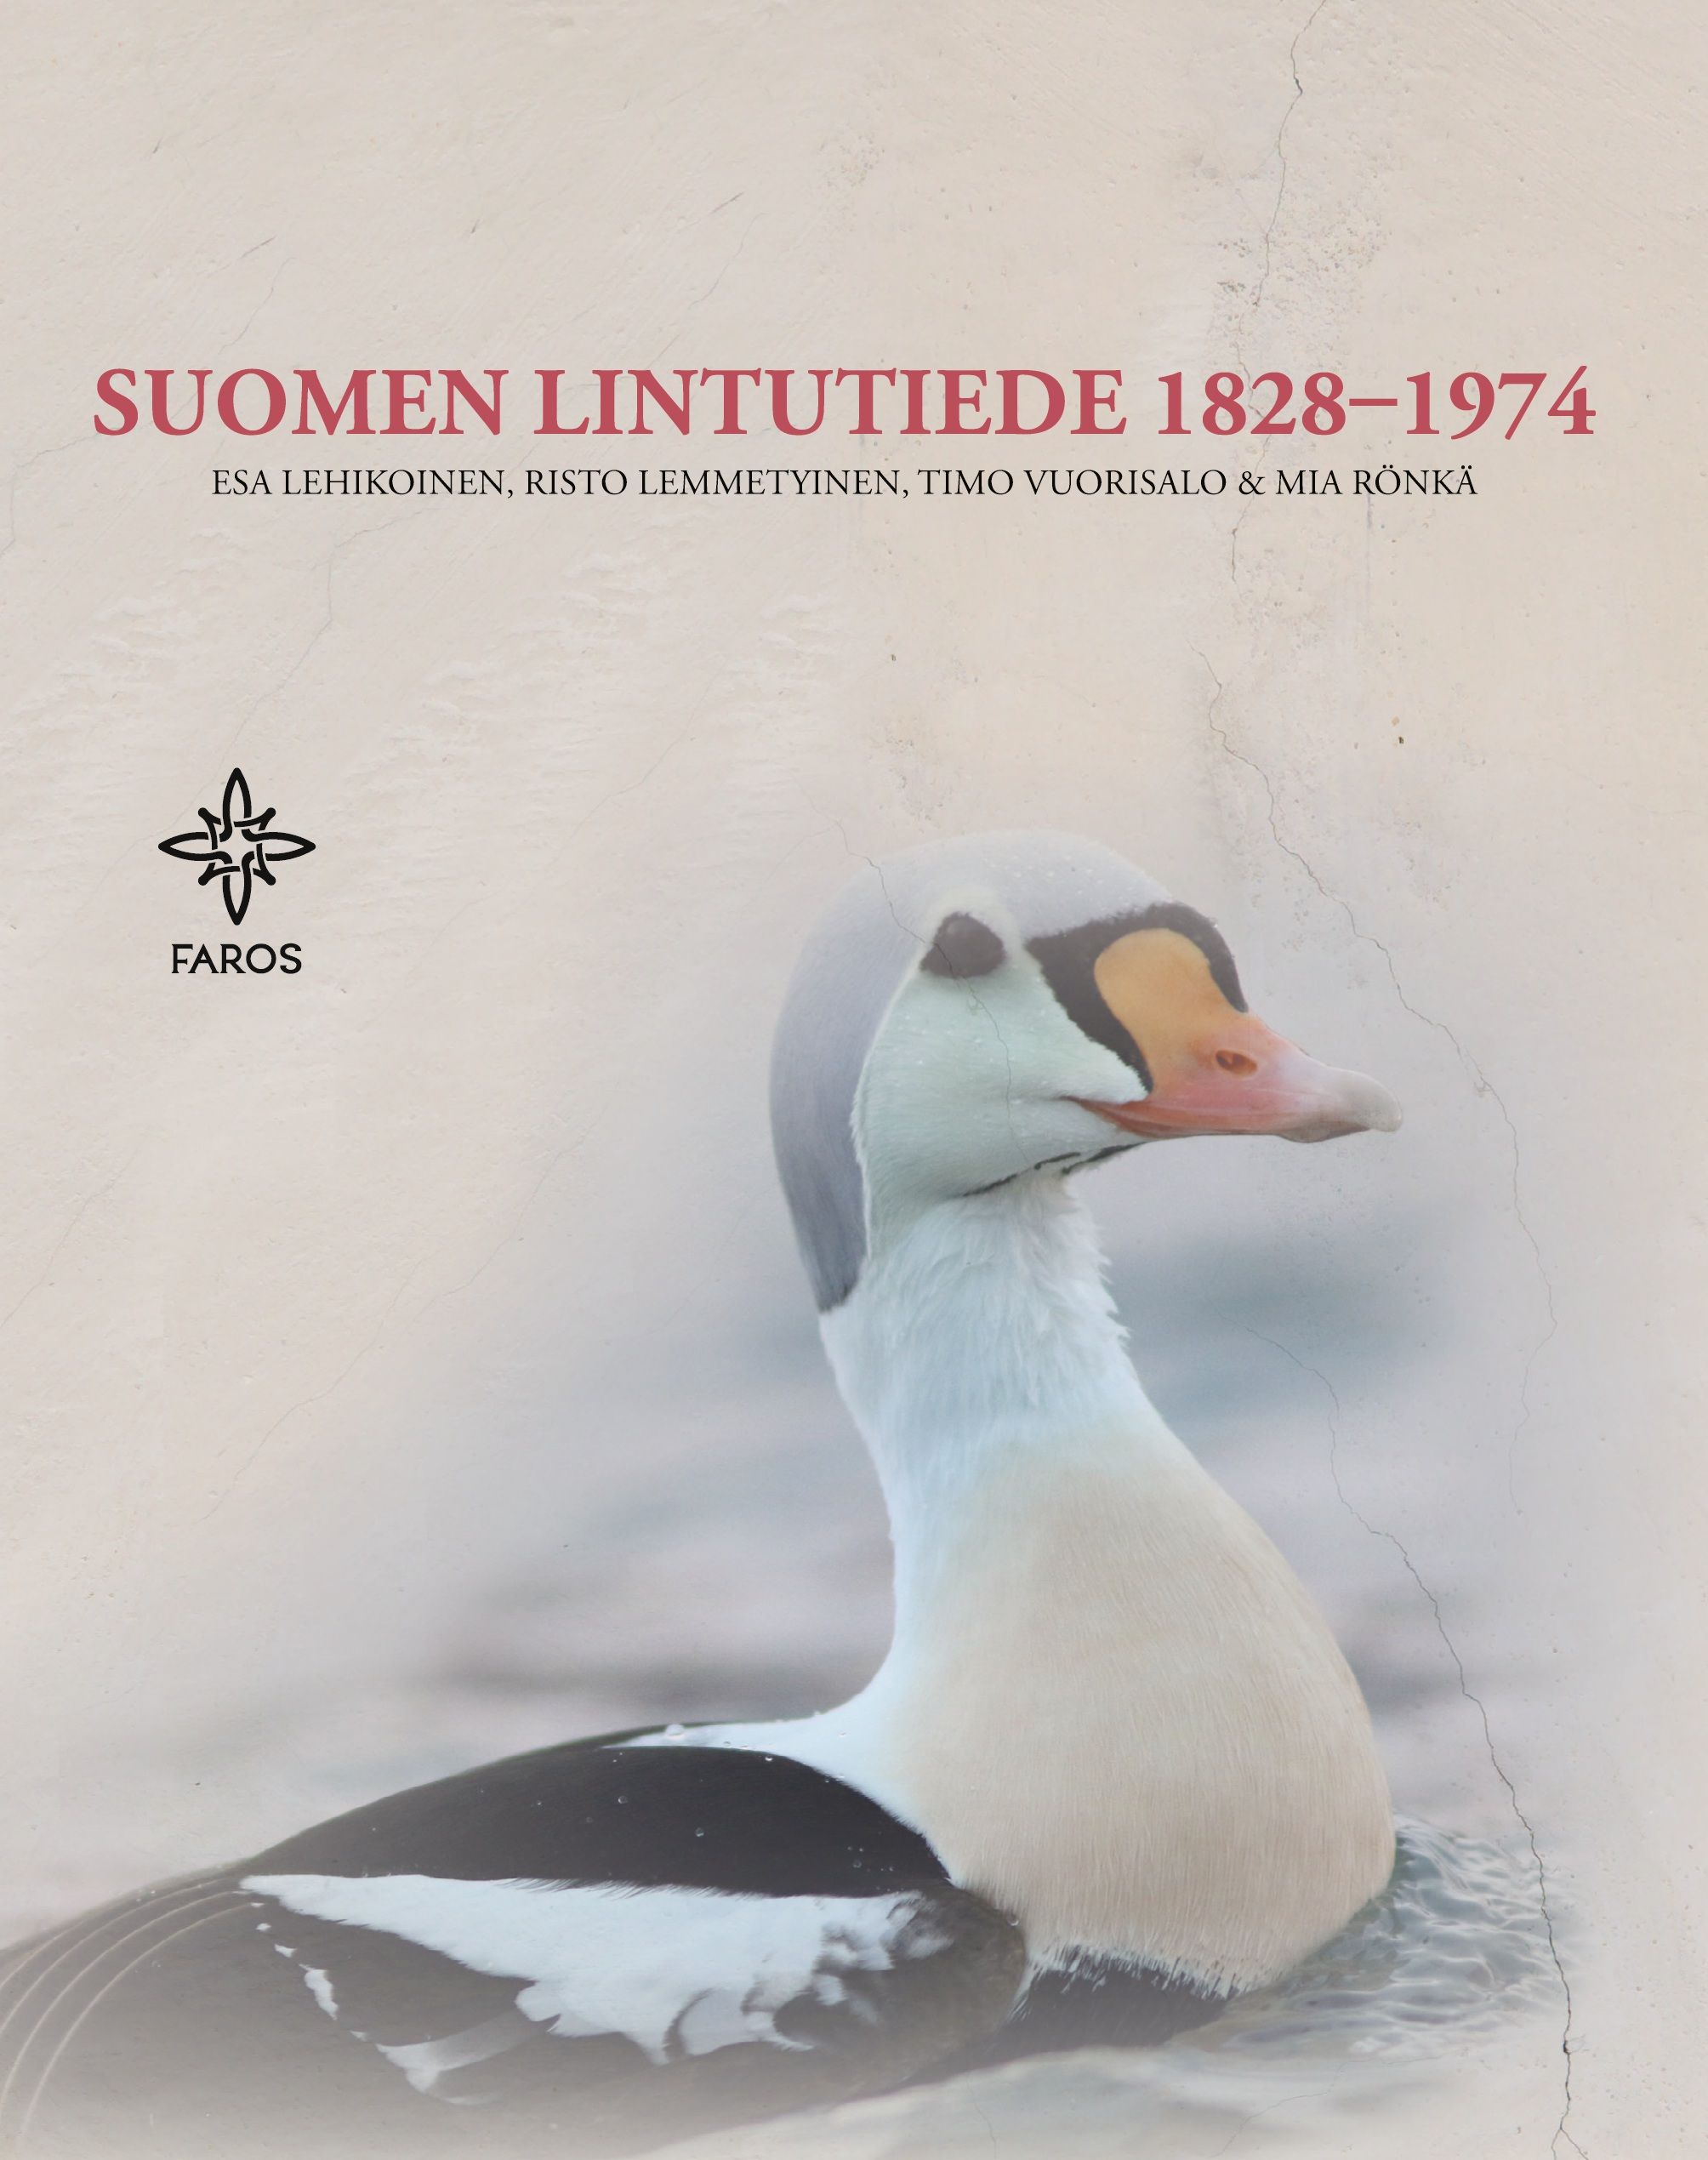 Esa Lehikoinen & Risto Lemmetyinen & Timo Vuorisalo & Mia Rönkä : Suomen lintutiede 1828-1974